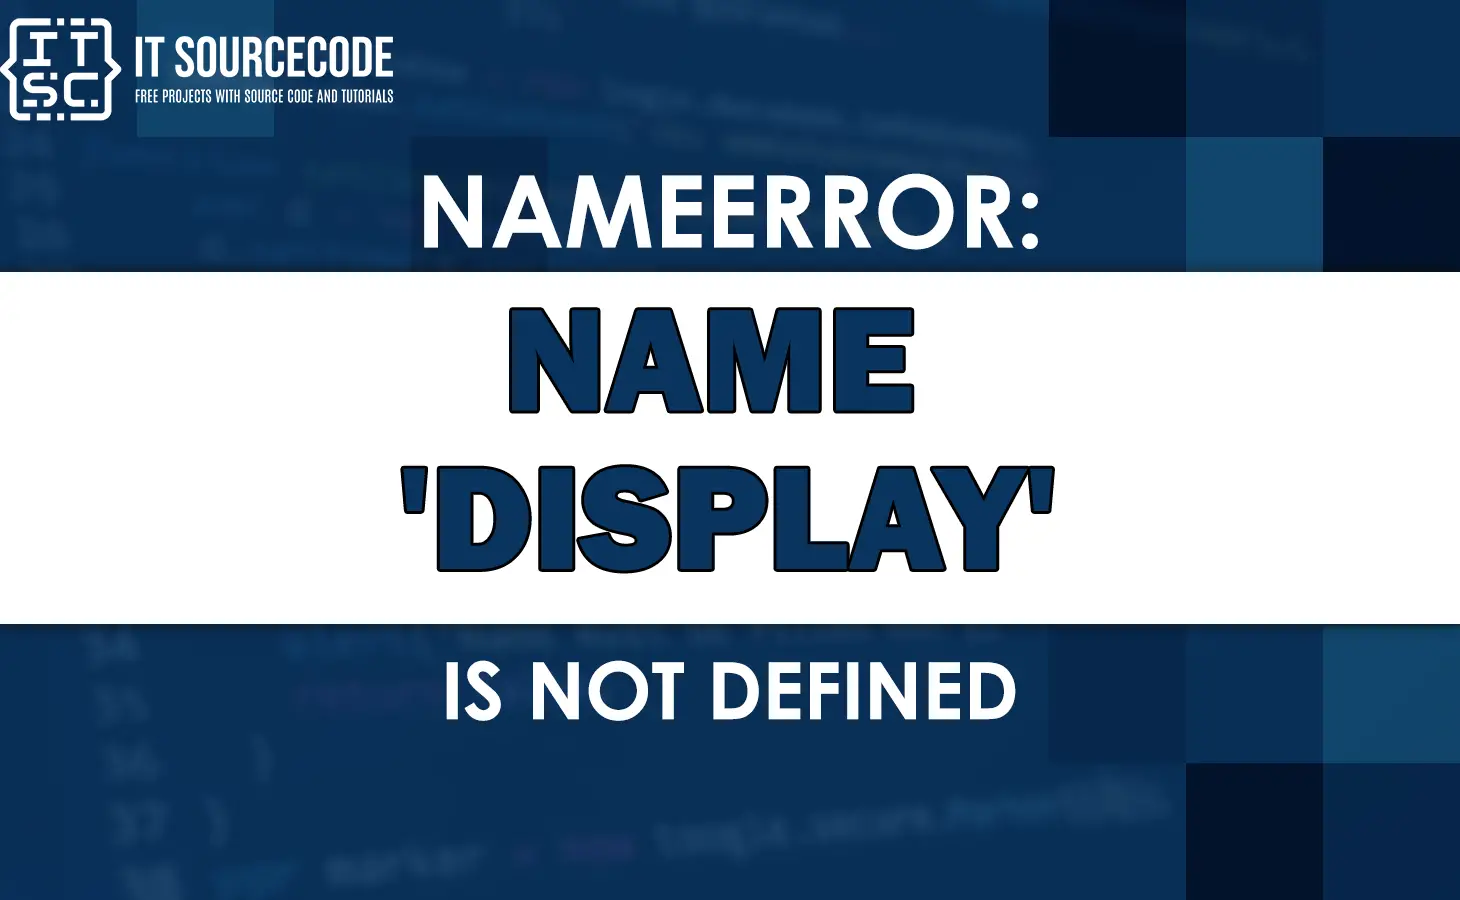 Nameerror: name 'display' is not defined